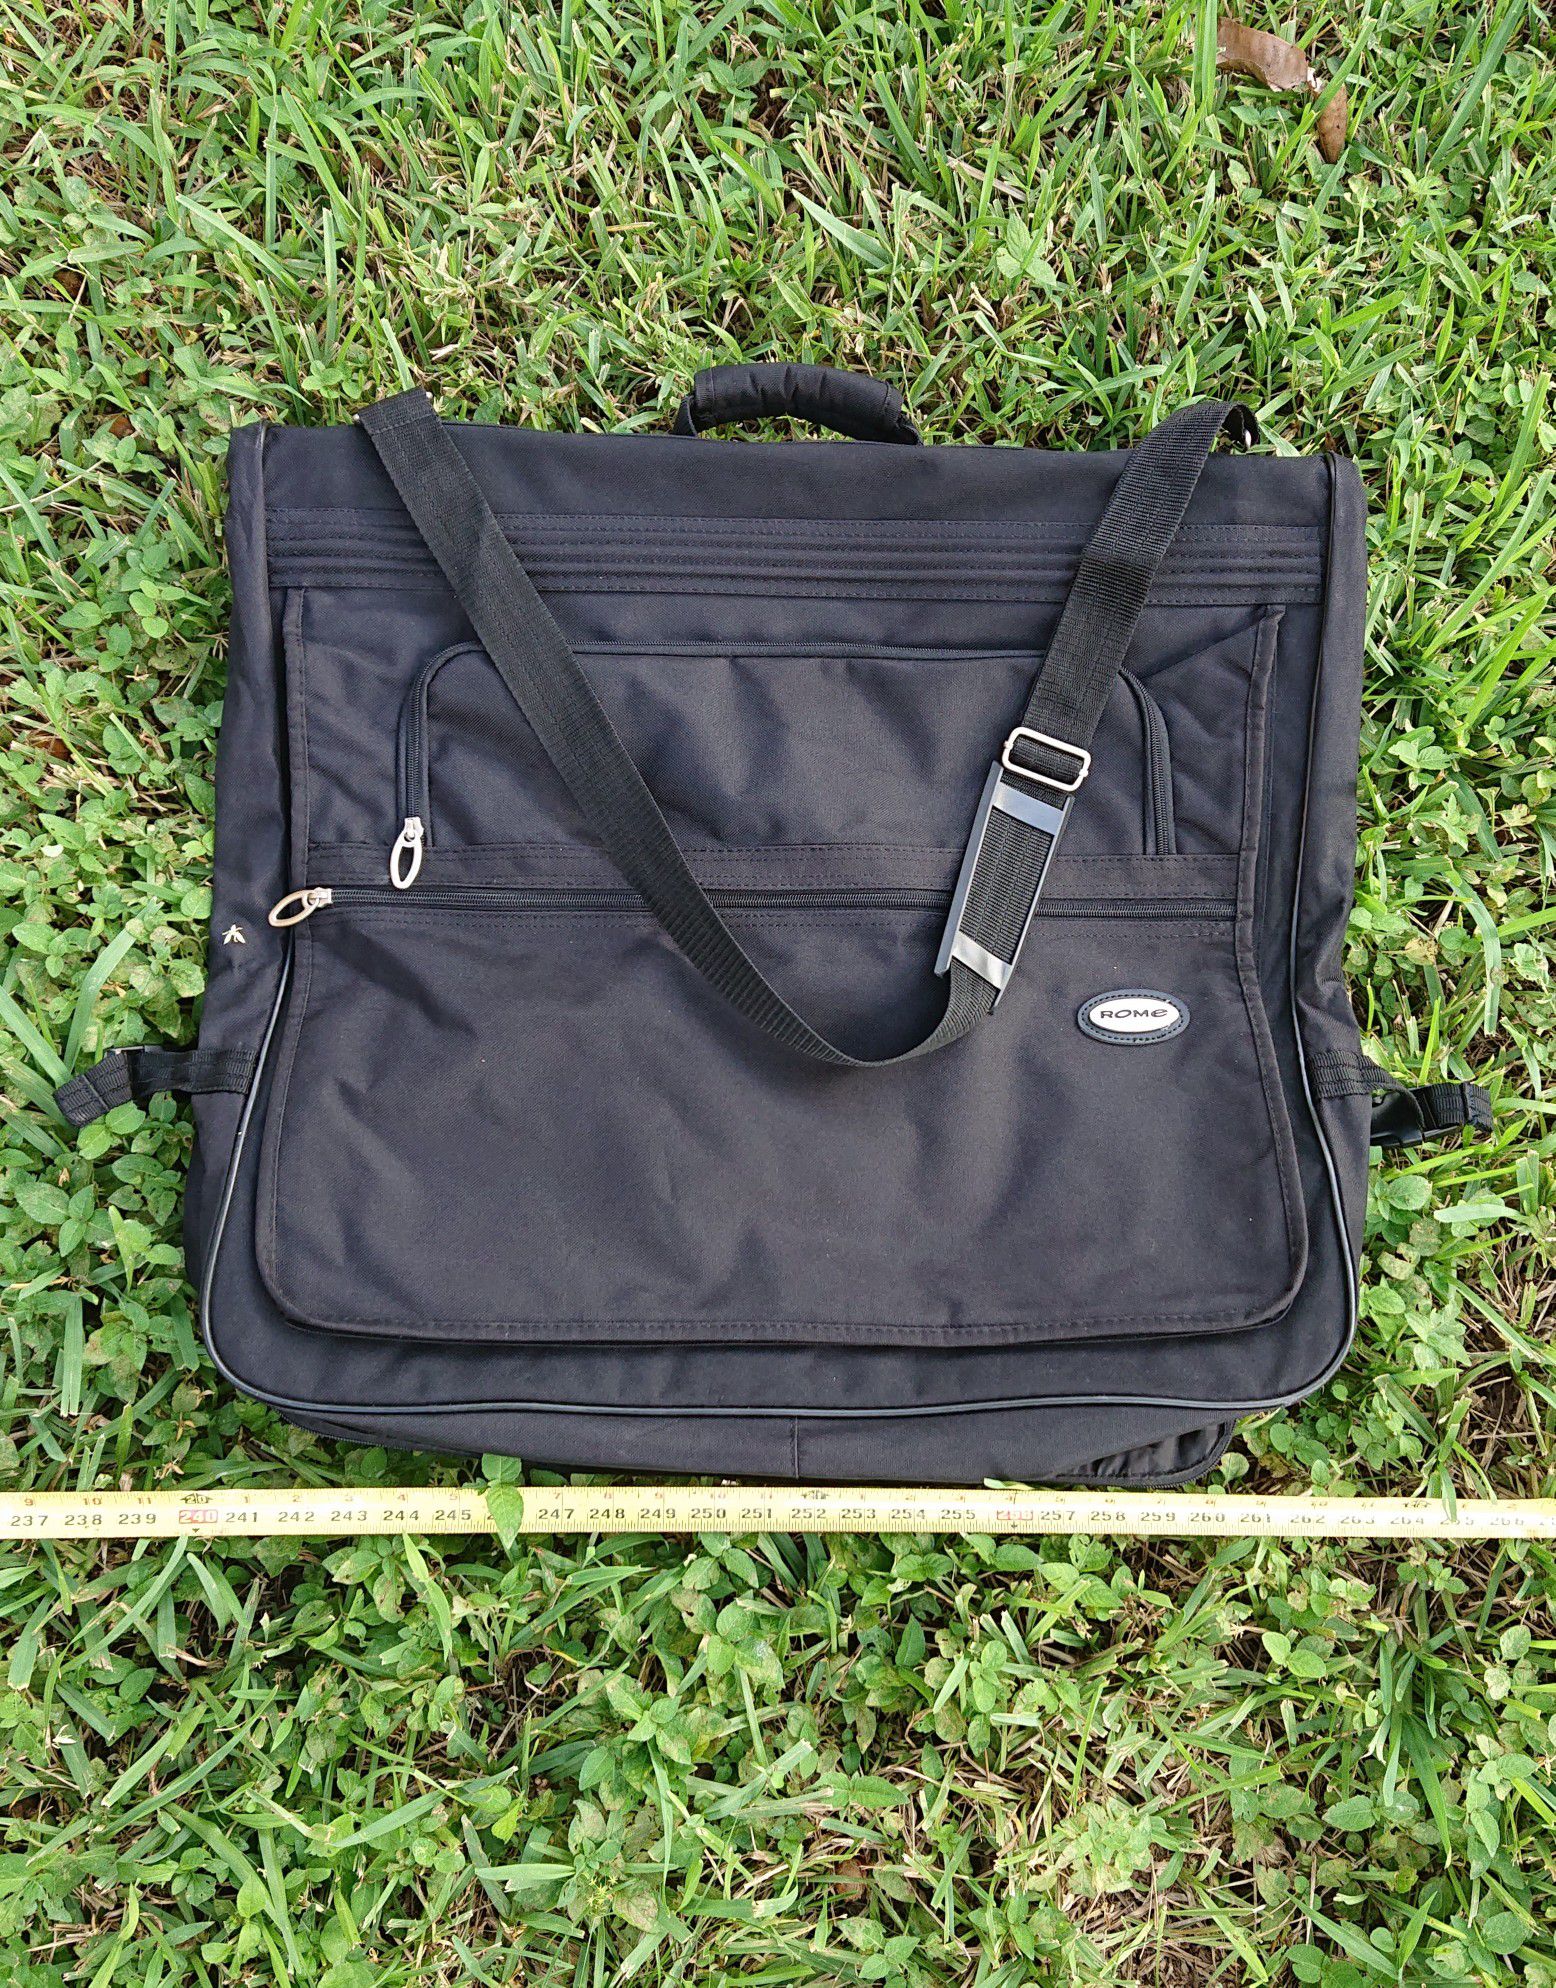 Travel Garment Bag. Black suitbag. Lockable Suit case